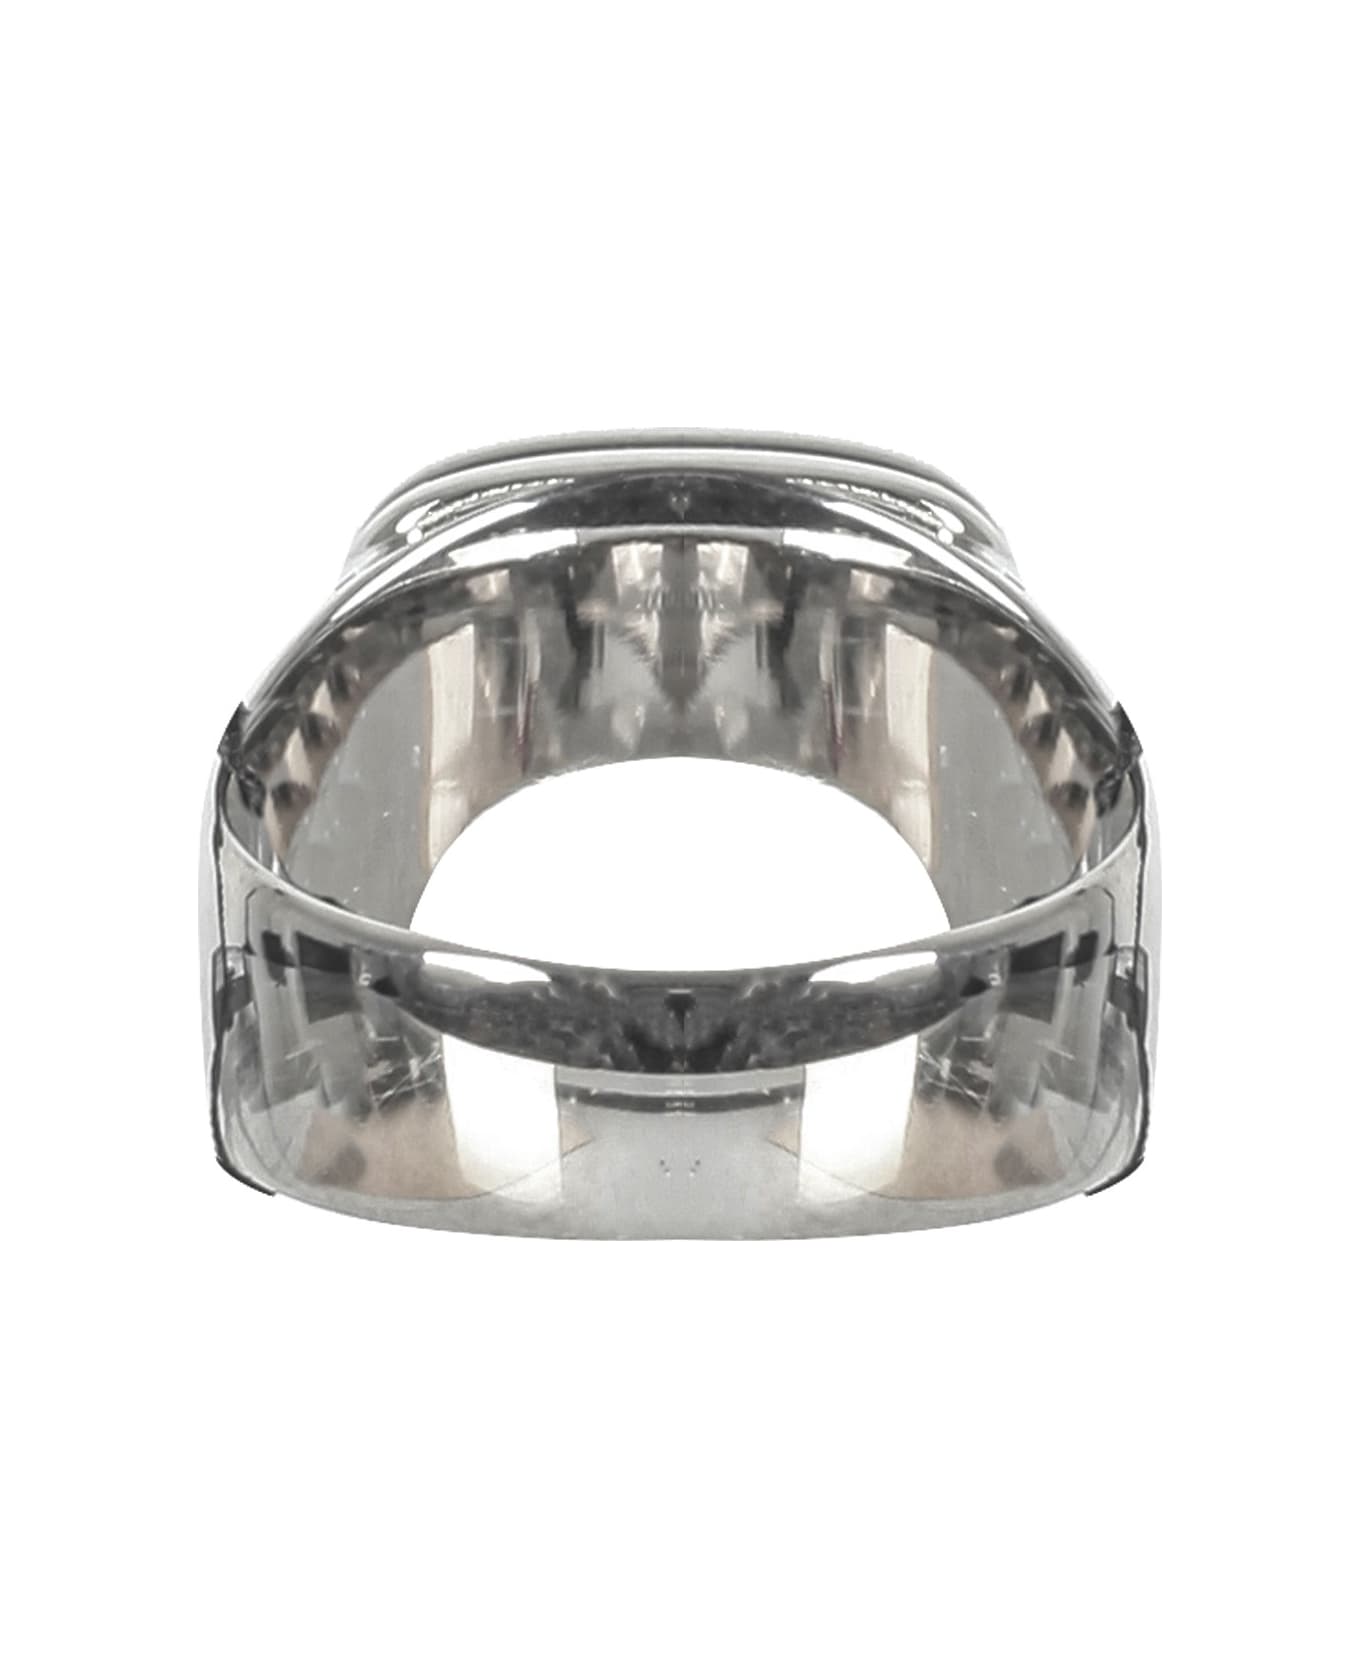 Dolce & Gabbana Man's Brass Ring With Logo - Metallic